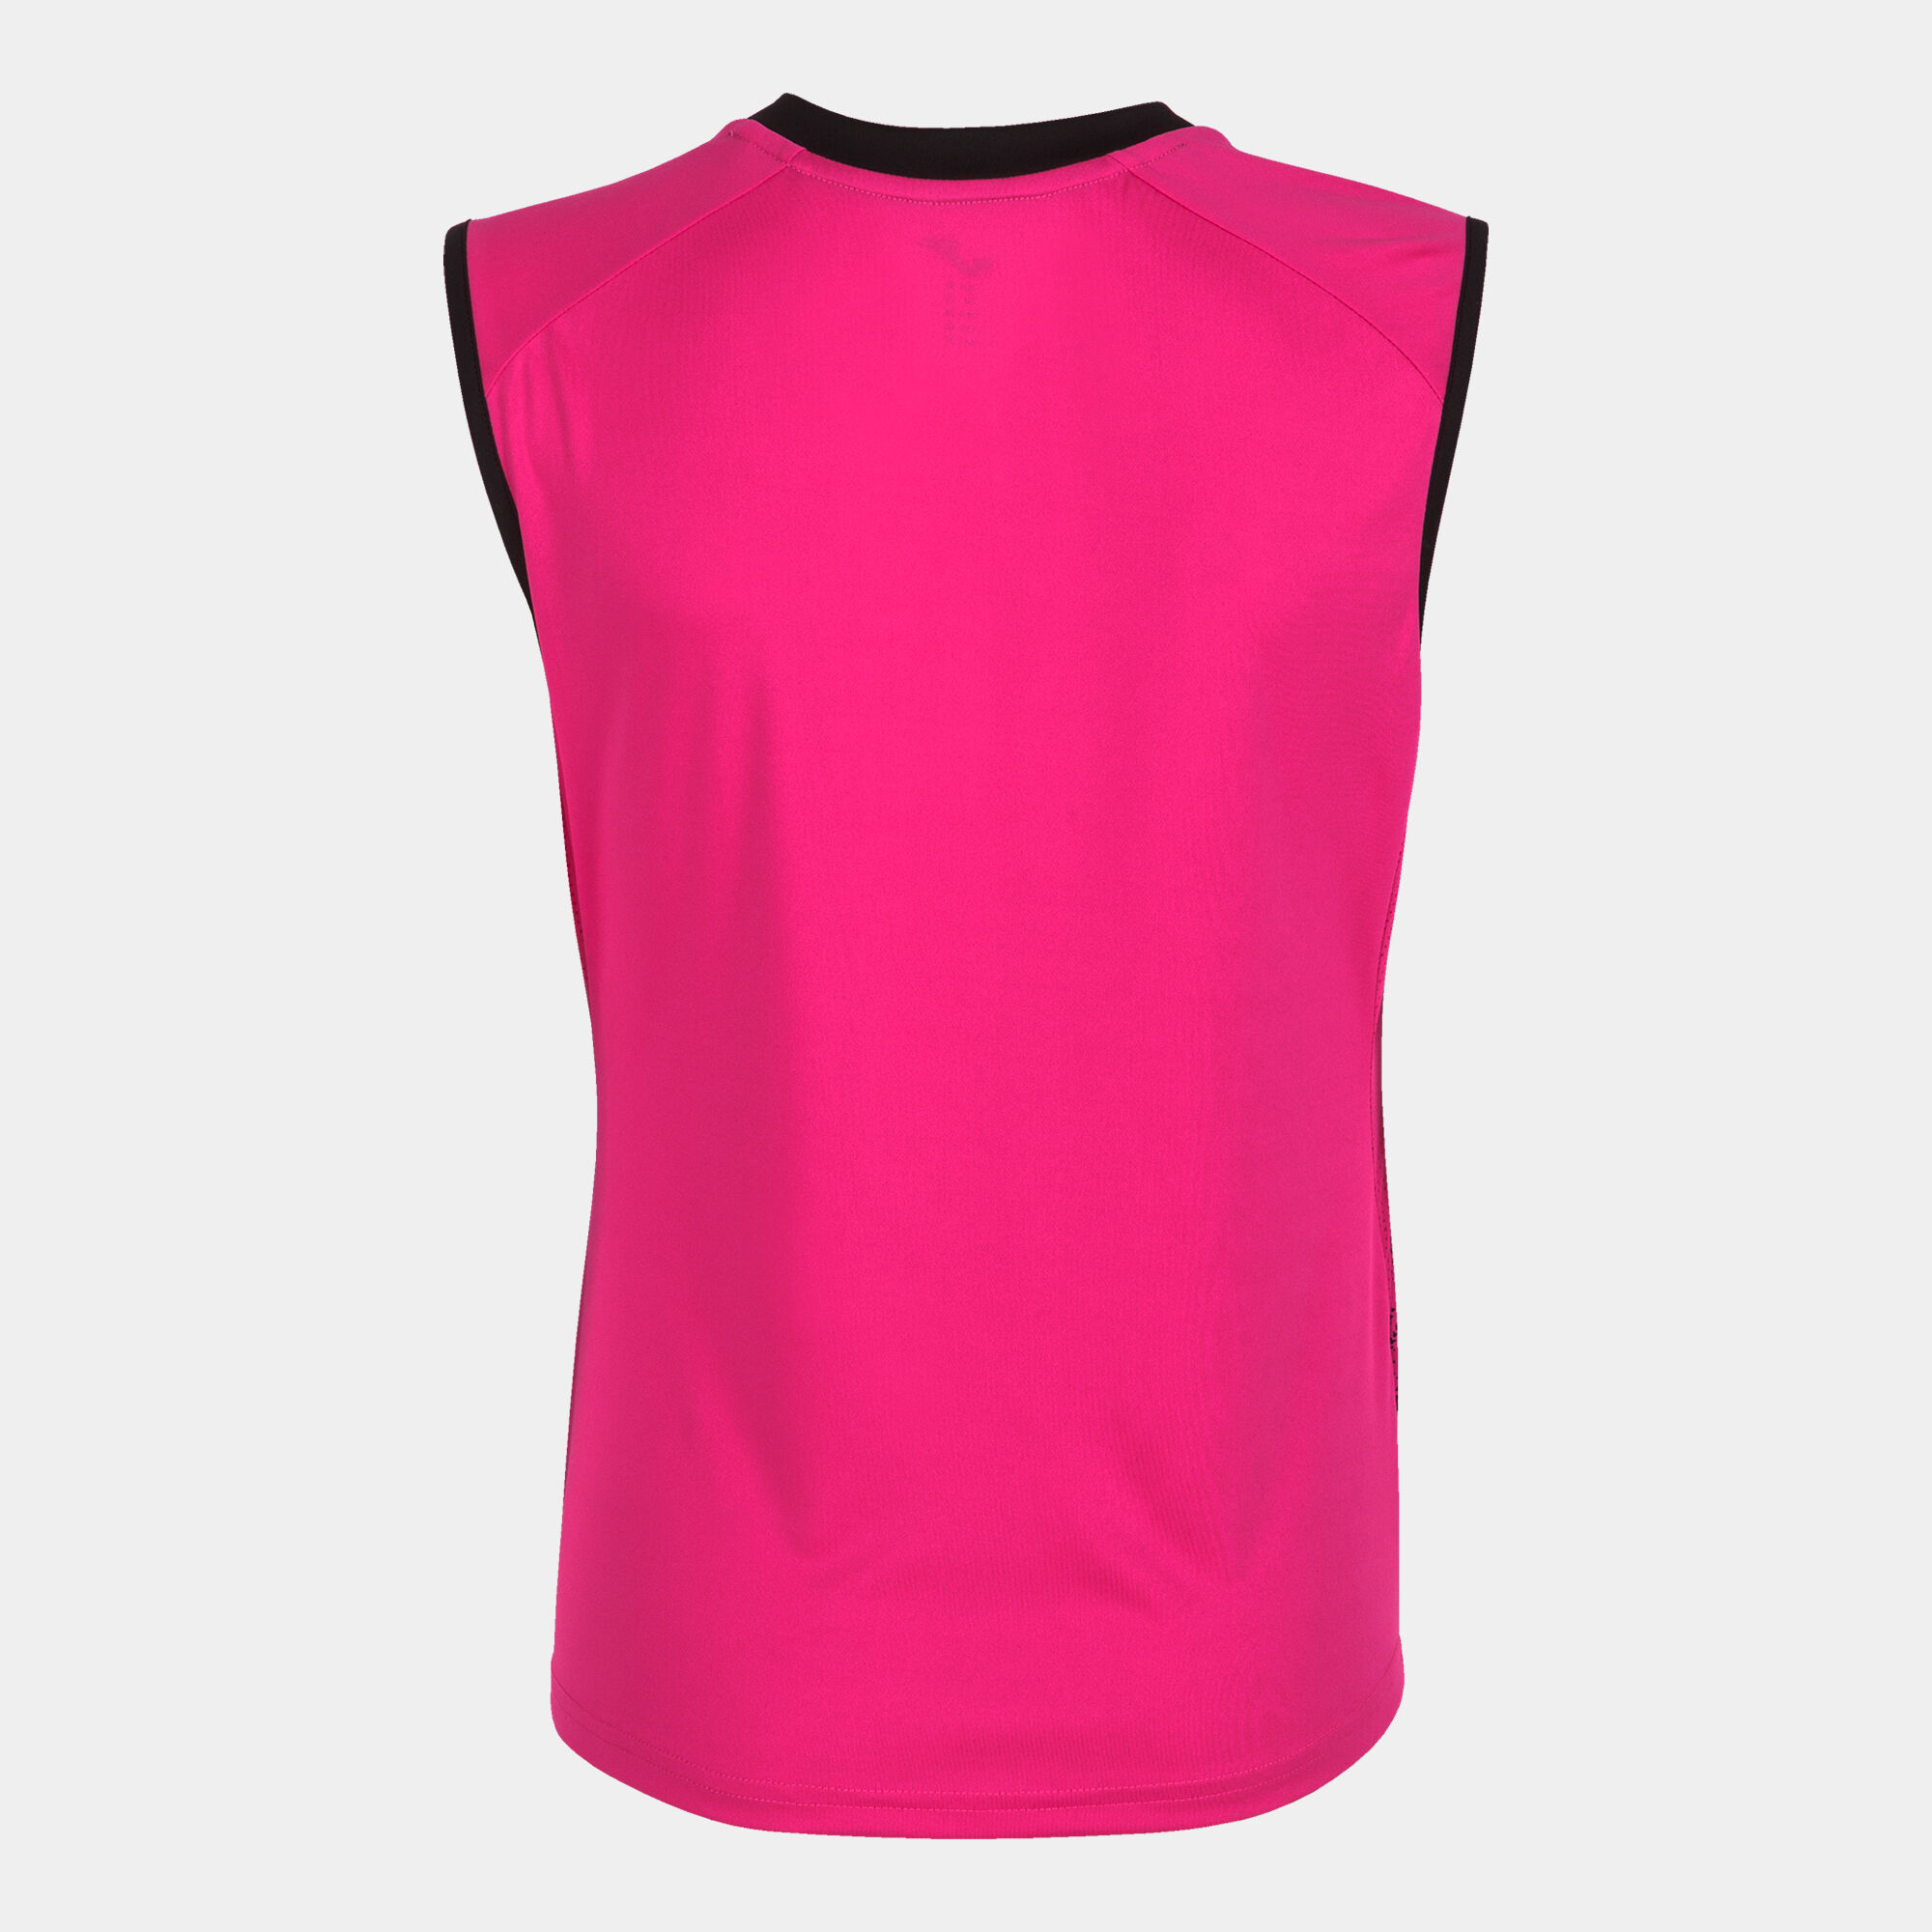 Sleeveless t-shirt woman Supernova III fluorescent pink black